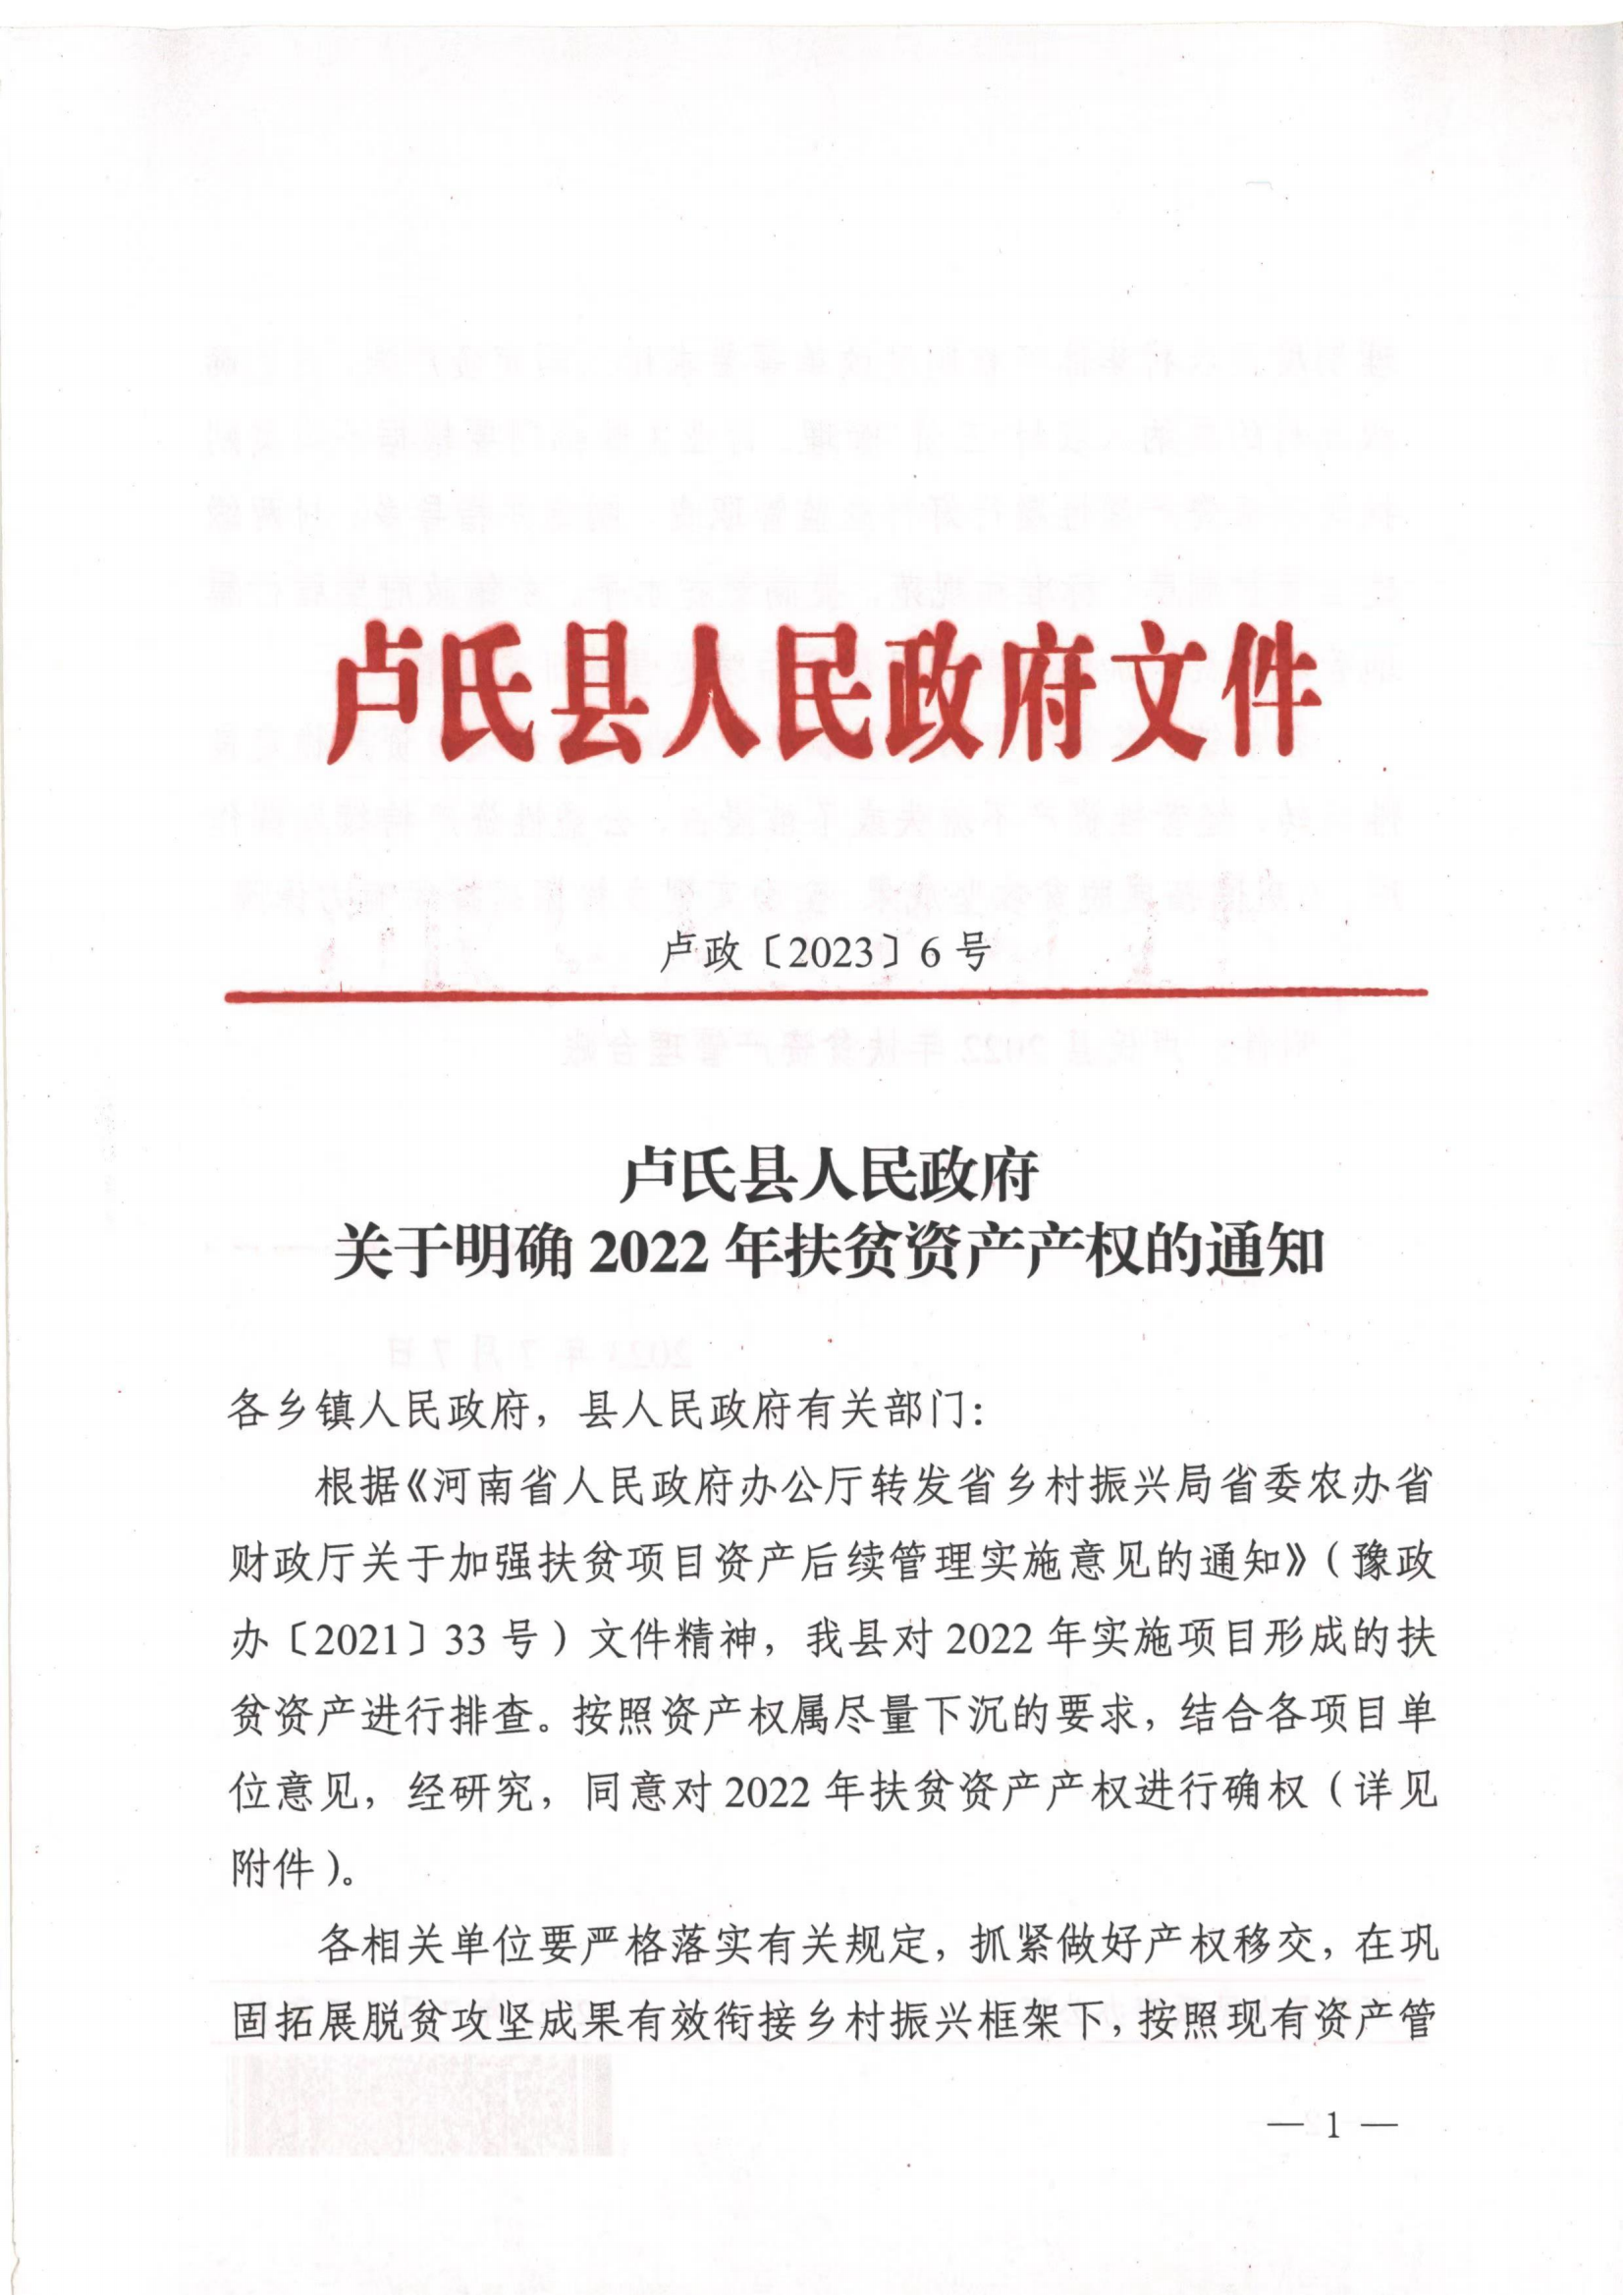 卢氏县2022年项目资产确权文件_00.png